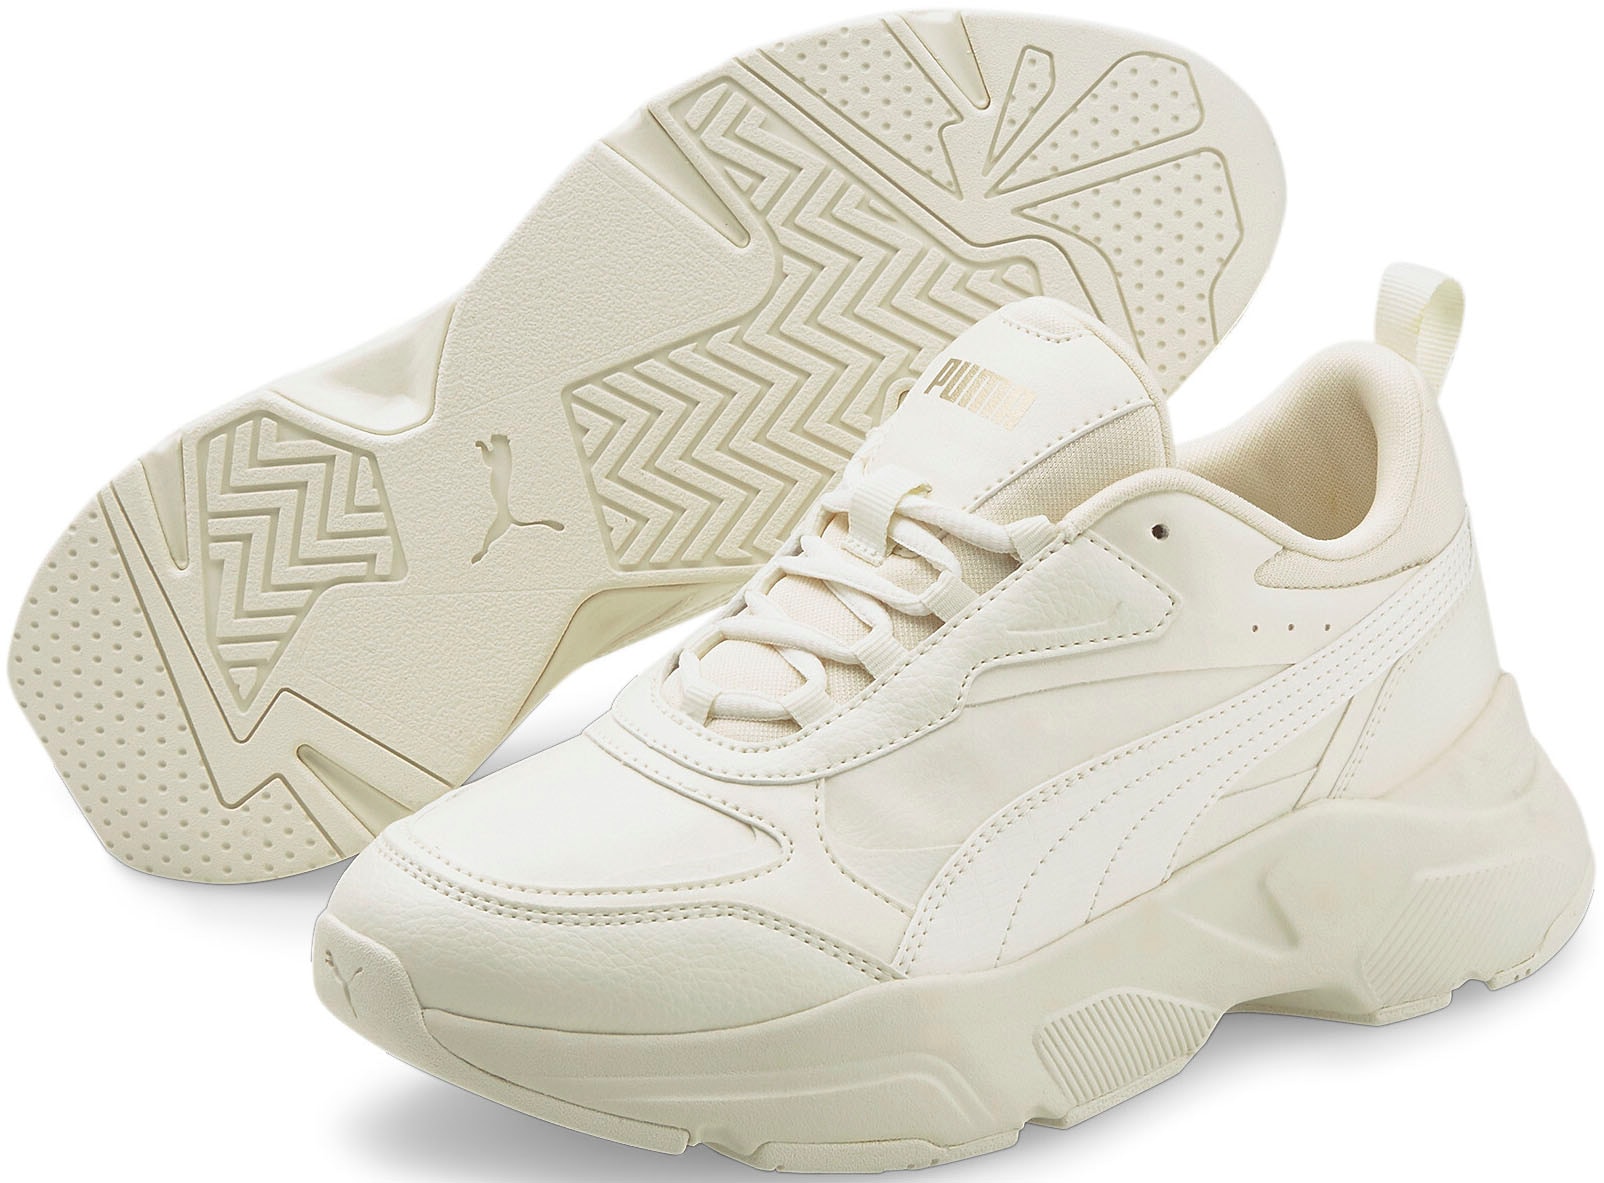 Puma Schuhe weiß günstig kaufen » I'm walking